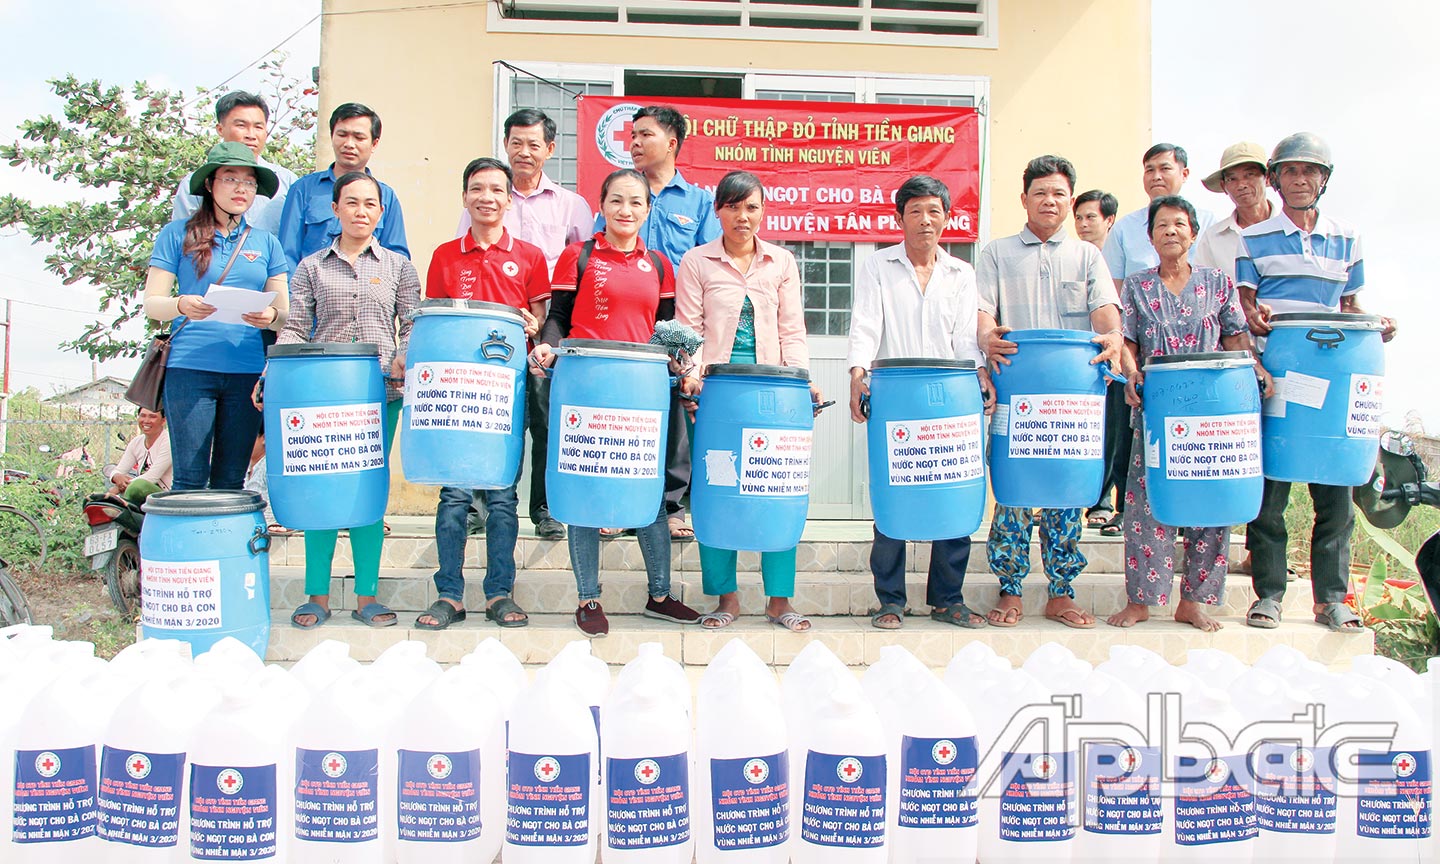 Nhóm Tình nguyện viên trao bồn chứa nước và can đựng nước cho người dân huyện Tân Phú Đông.